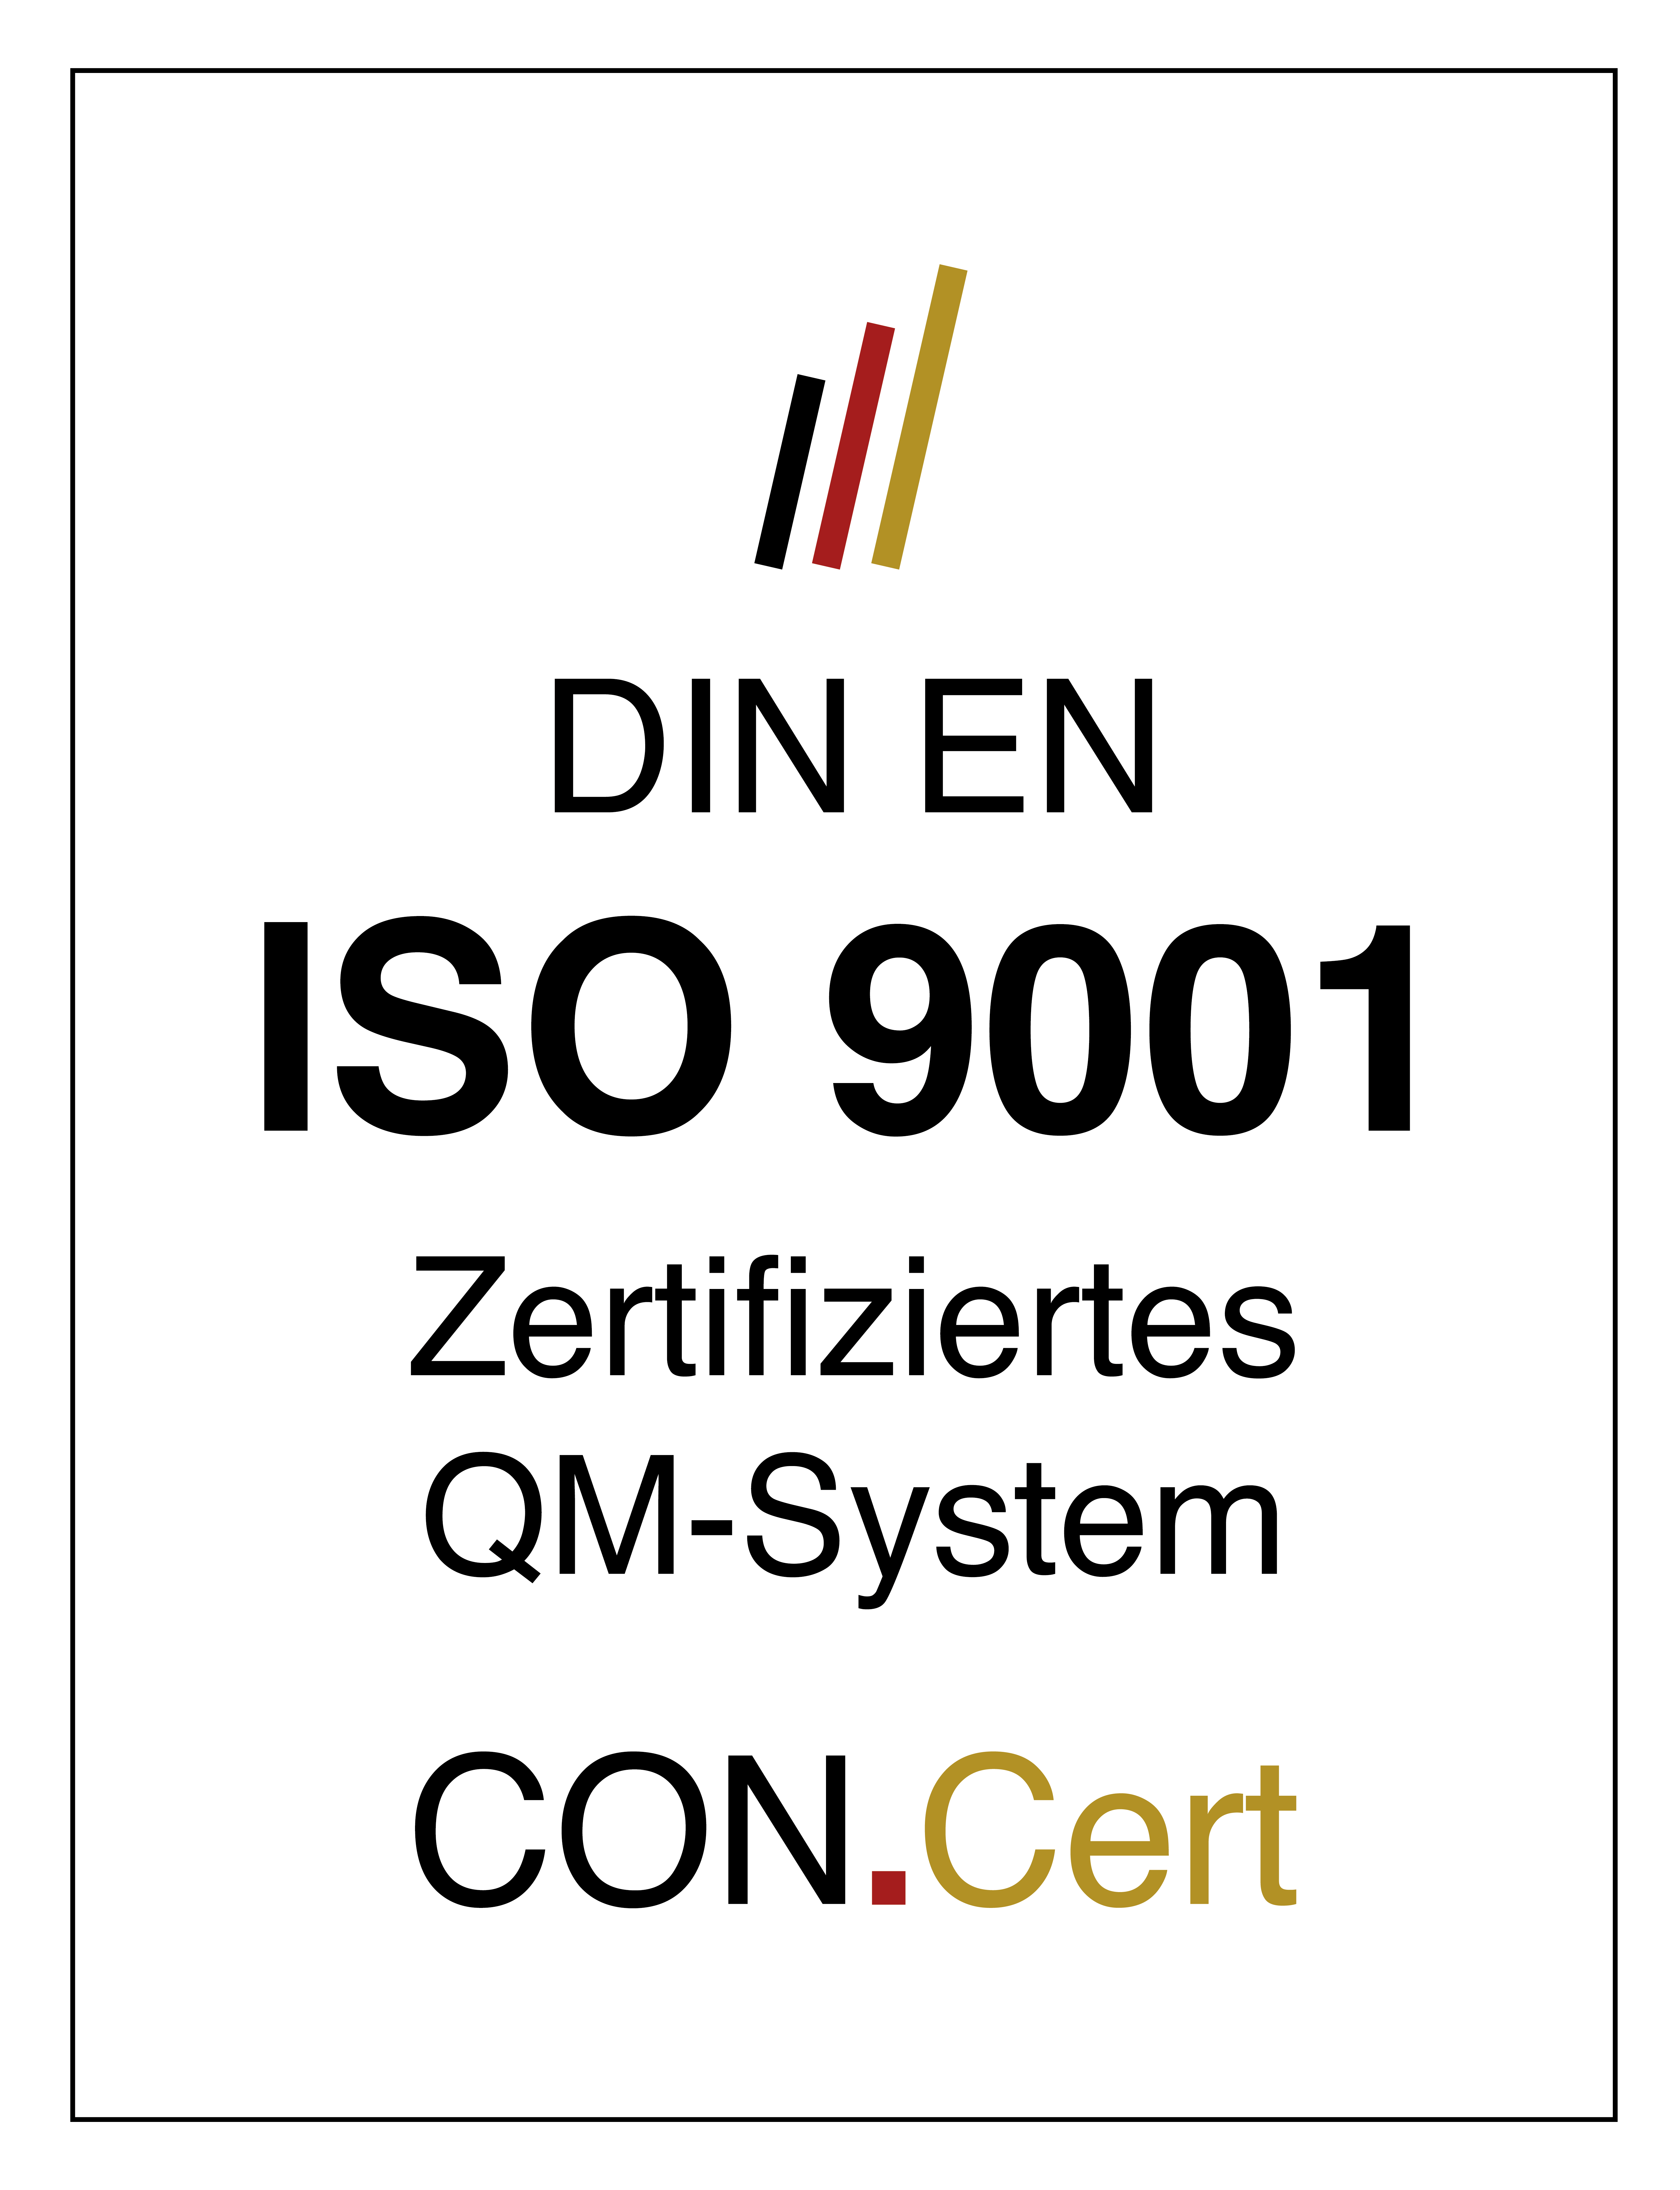 DIN EN ISO 9001 Zertifiziertes QM-System